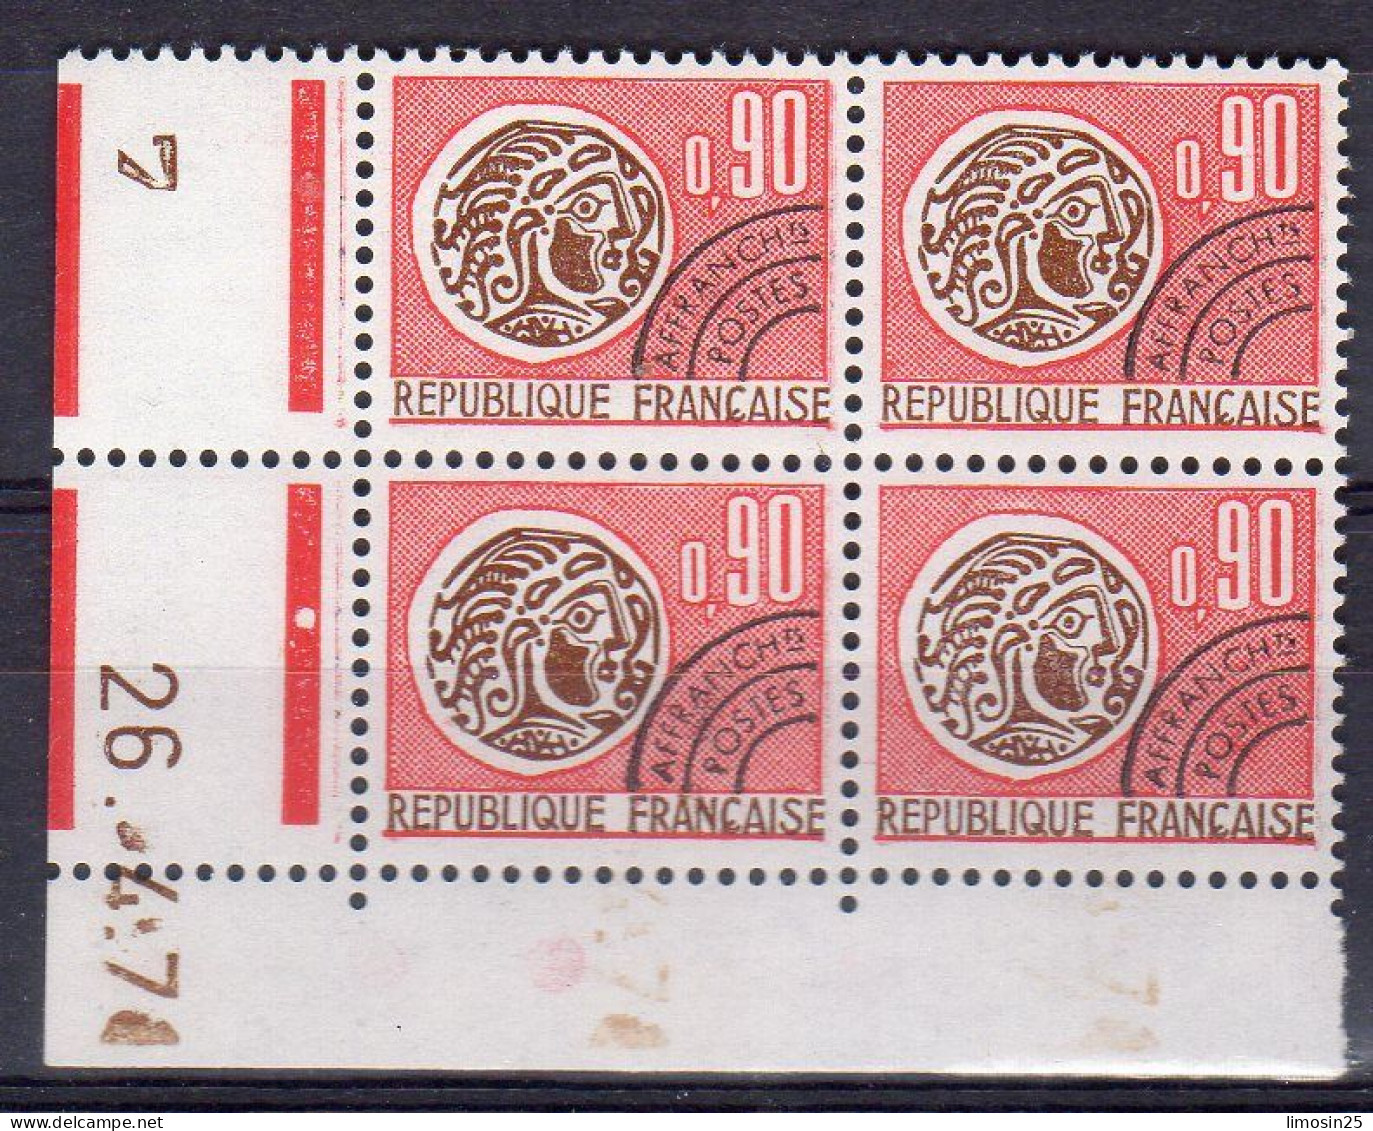 Monnaie Gauloise - Coin Daté 26-4-197. - 1964-1988